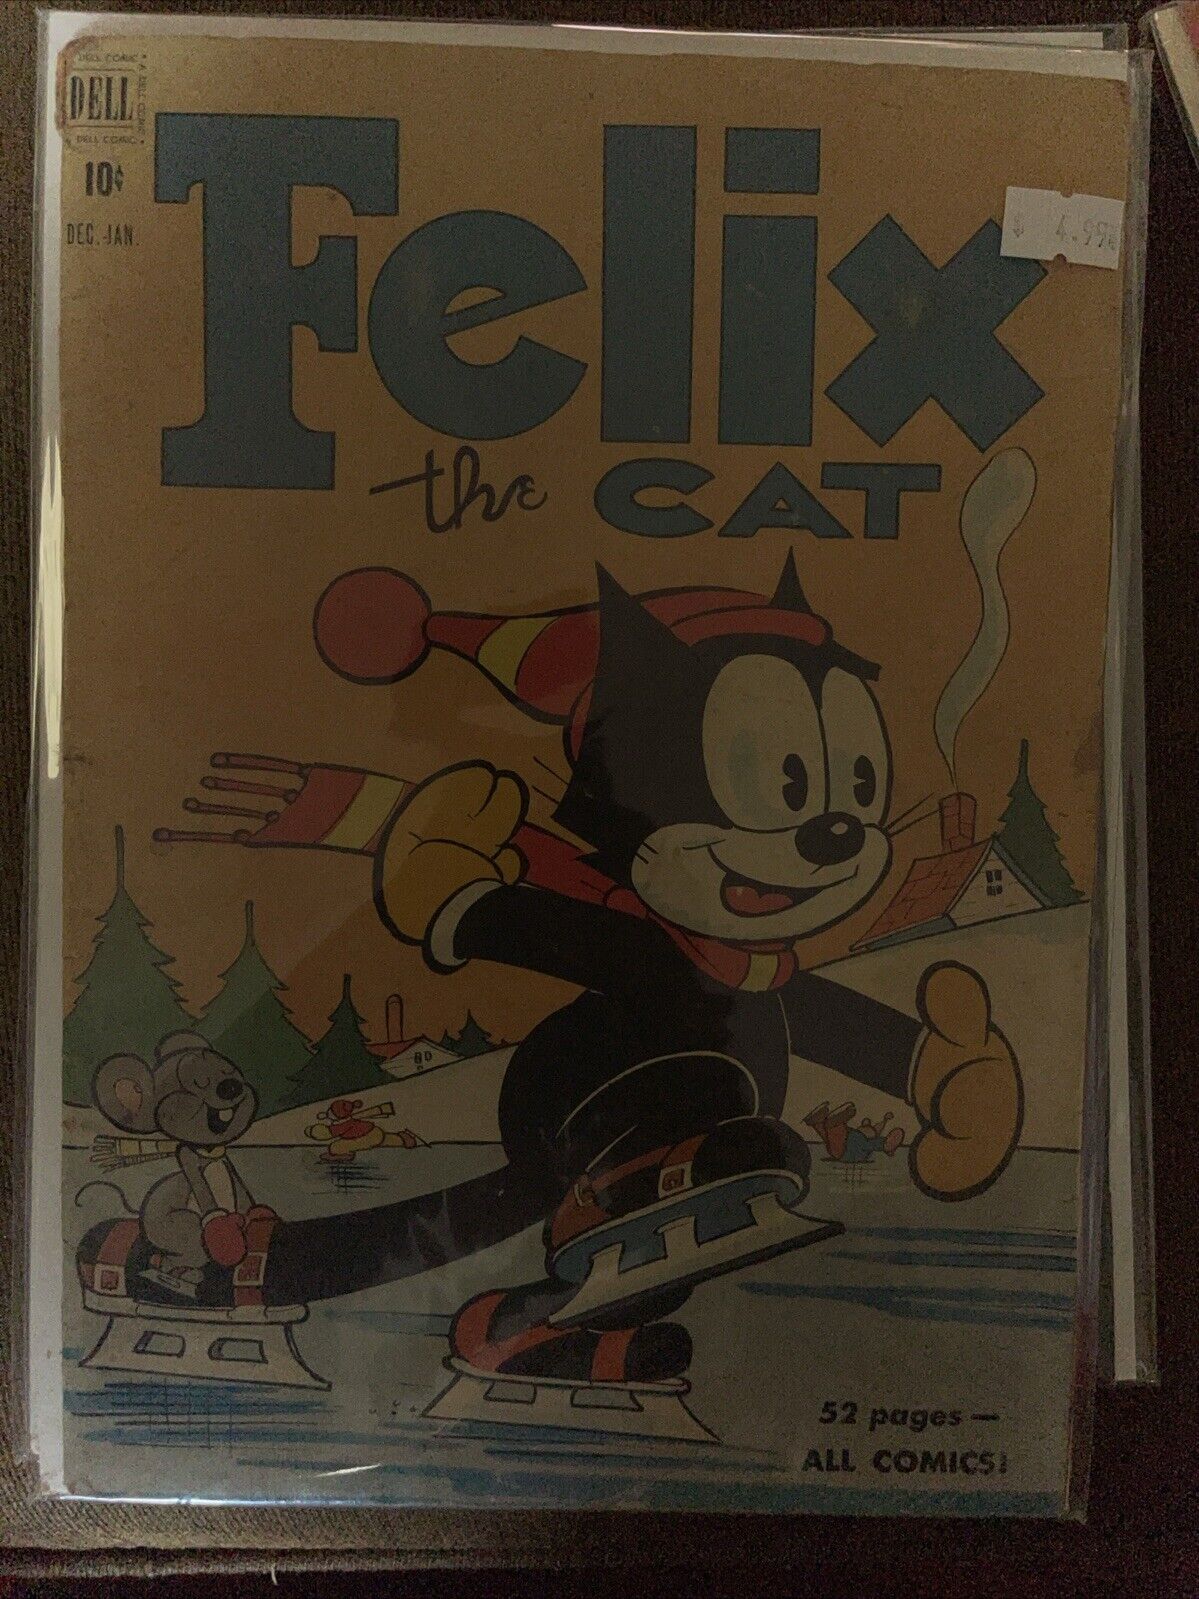 FELIX THE CAT #18 (DELL 1951).  VG-F (5.0) cond. Solid Mid-Grade Copy